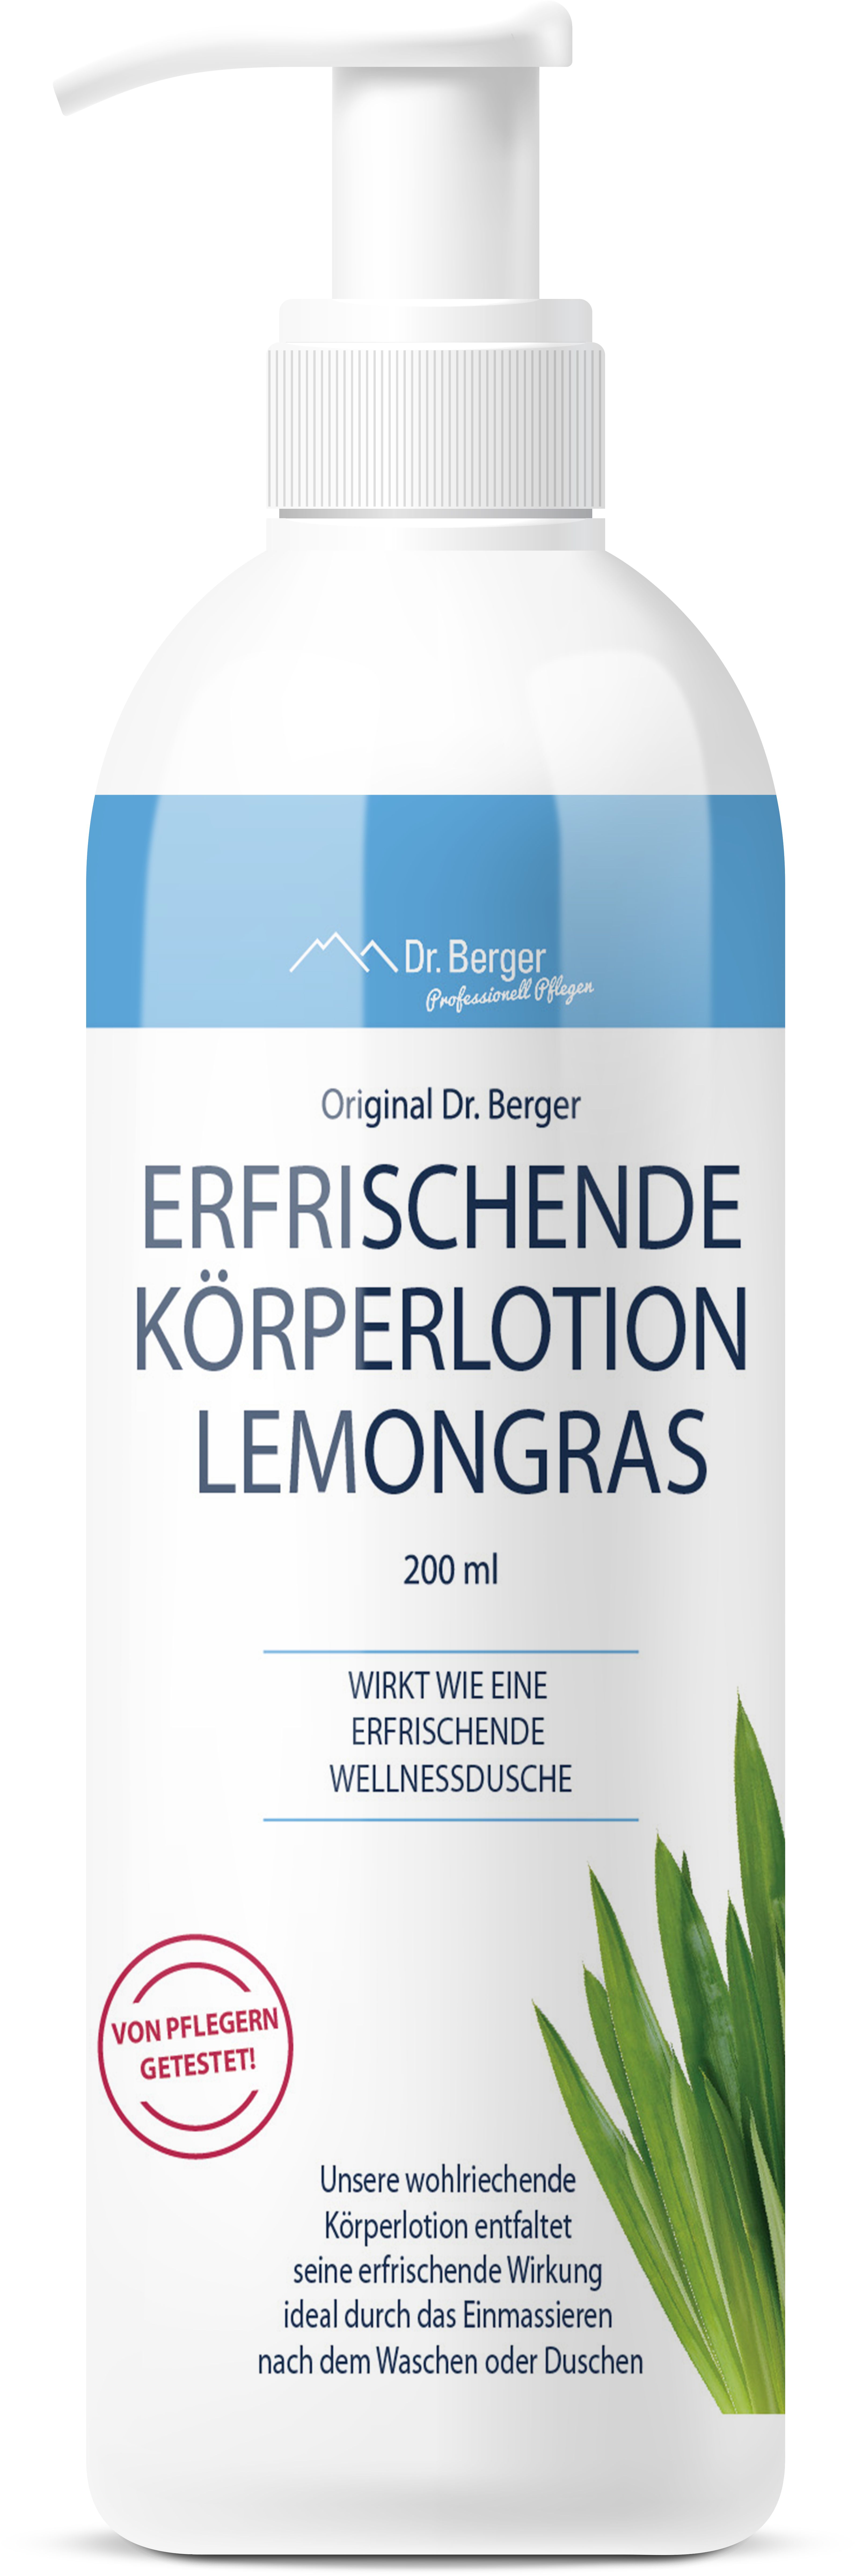 Original Dr. Berger Erfrischende Körperlotion Lemongras